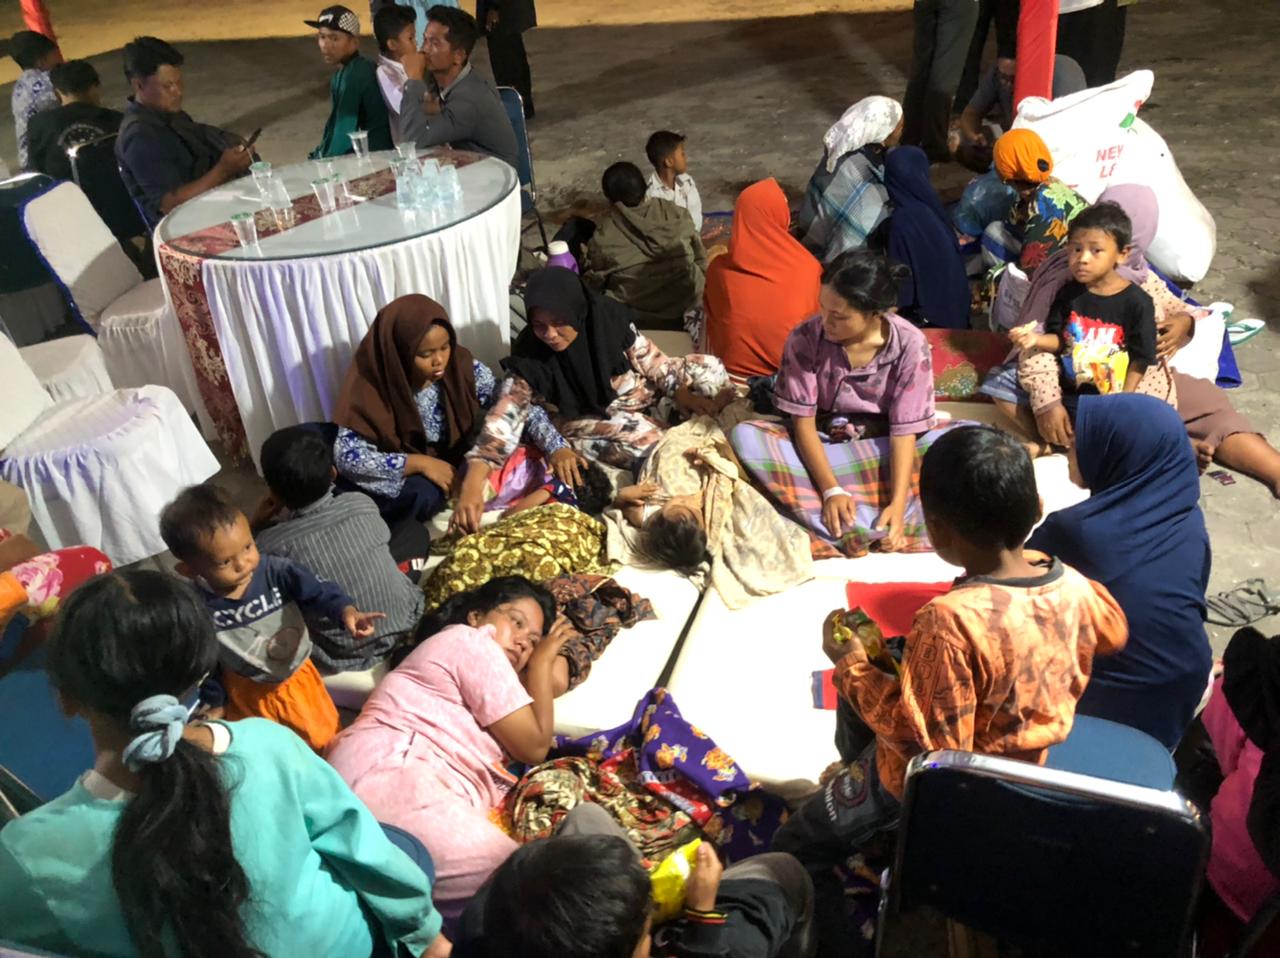 PENGUNGSI | Warga korban terdampak gempa Pasaman Barat, Sumatera Barat kesulitan mendapatkan tempat mengungsi. (Halbert Caniago)